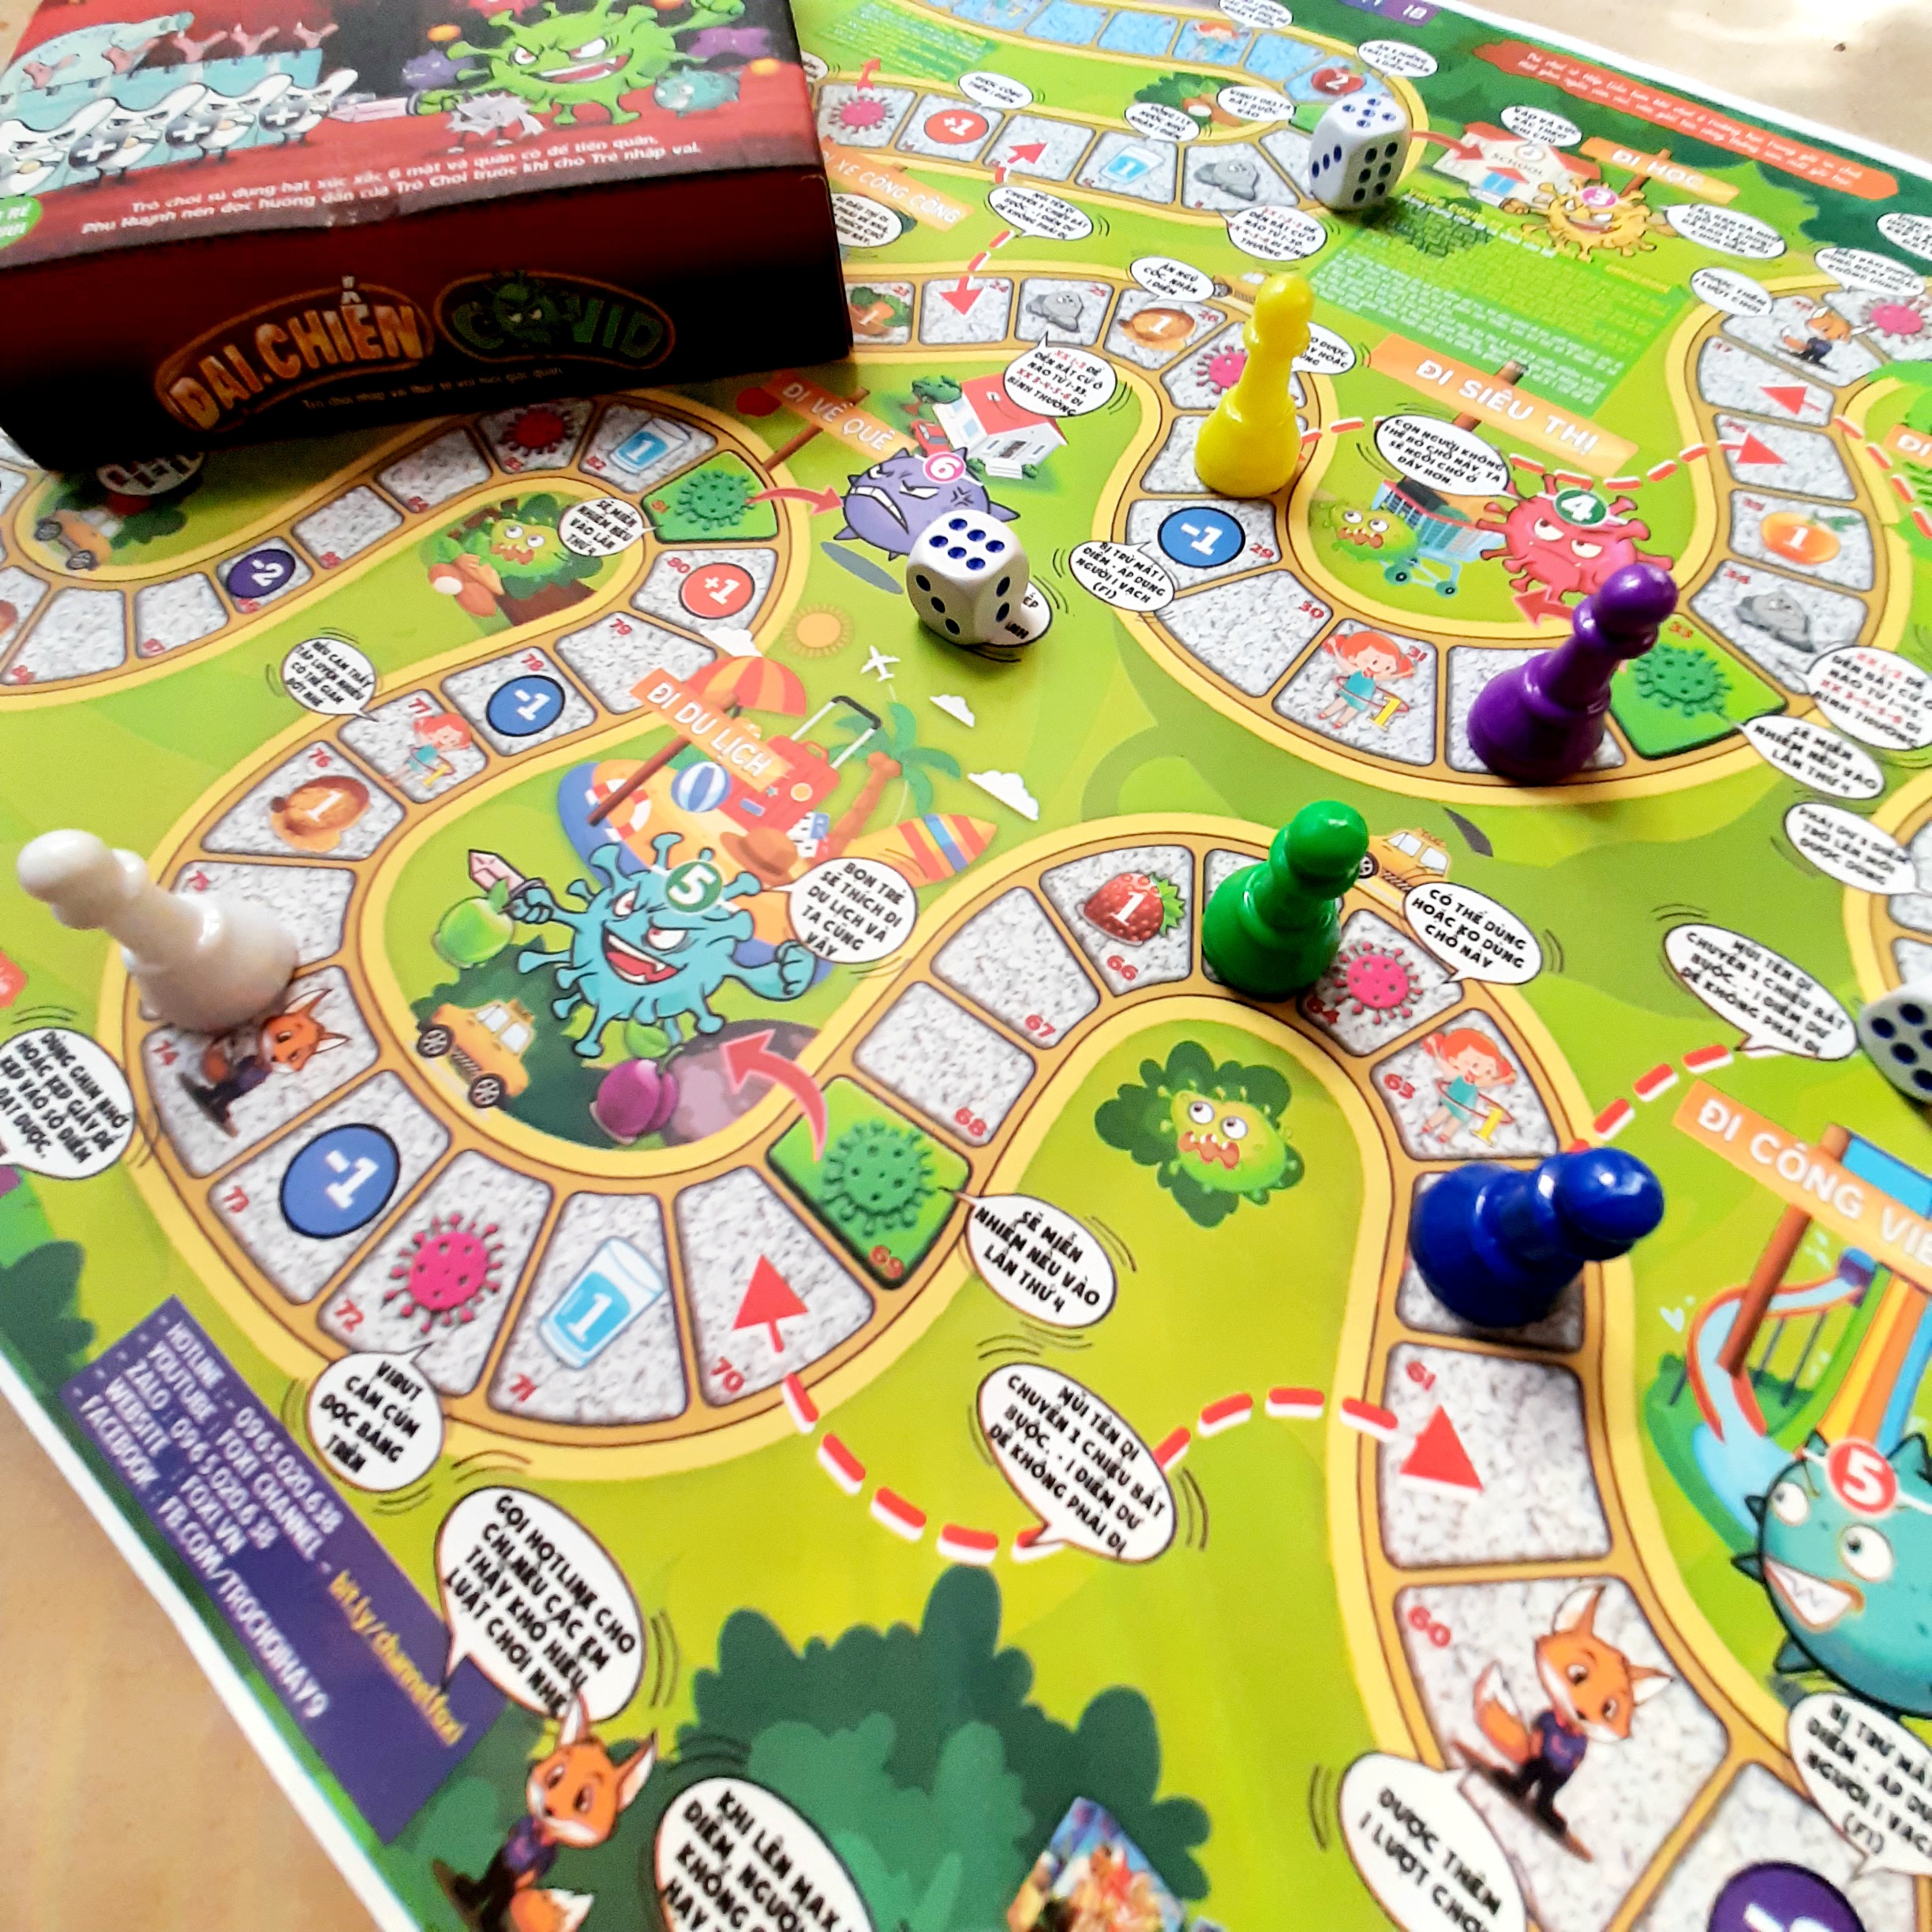 Boardgame-Đại chiến Covid Foxi-game nhập vai chân thực-hấp dẫn-tăng tương tác, kết nối thành viên nhóm bạn bè-gia đình